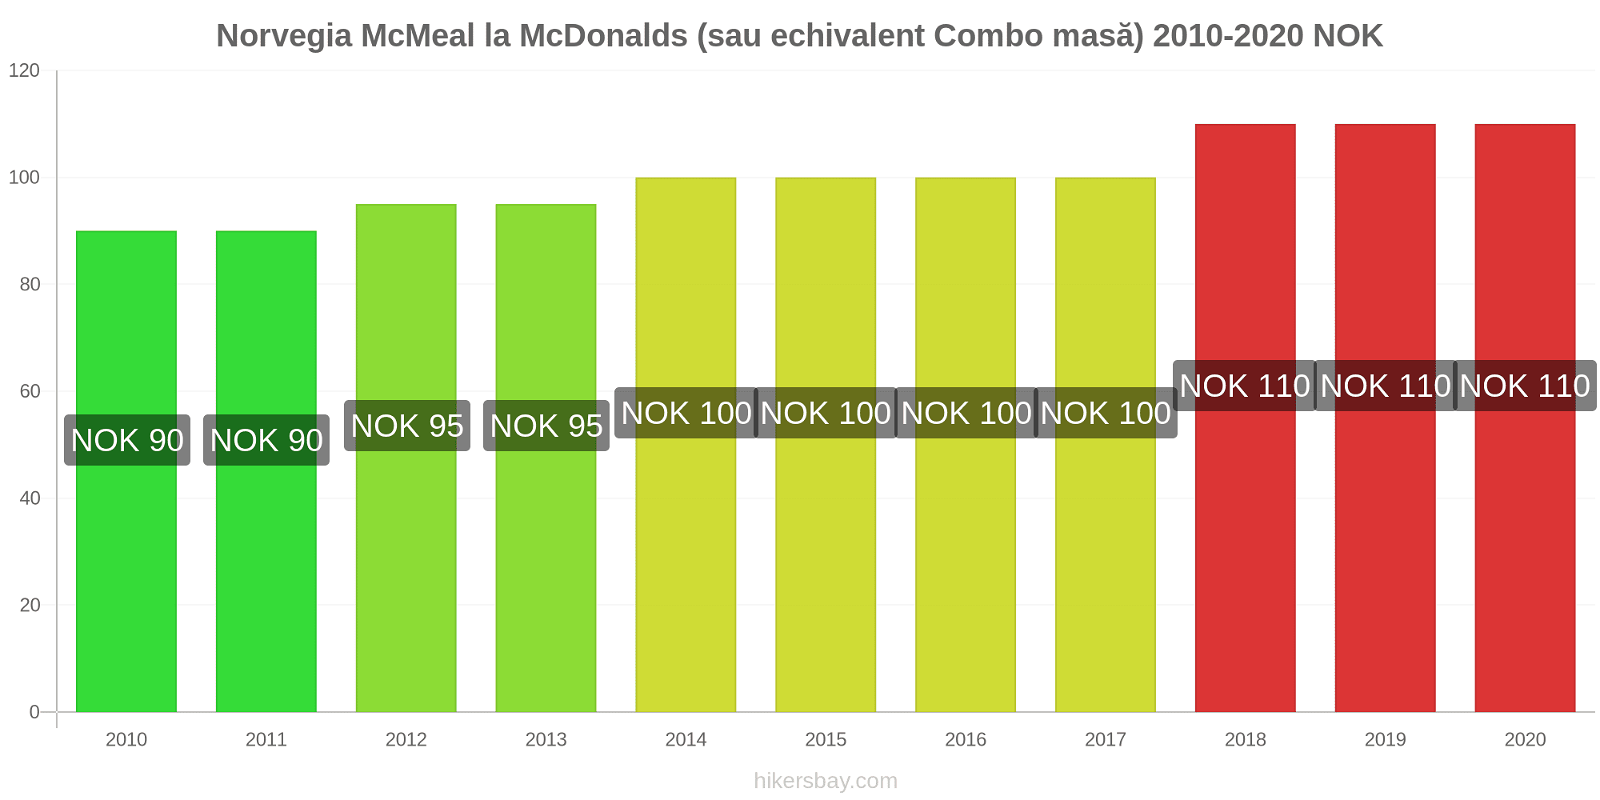 Norvegia modificări de preț McMeal la McDonalds (sau echivalent Combo masă) hikersbay.com